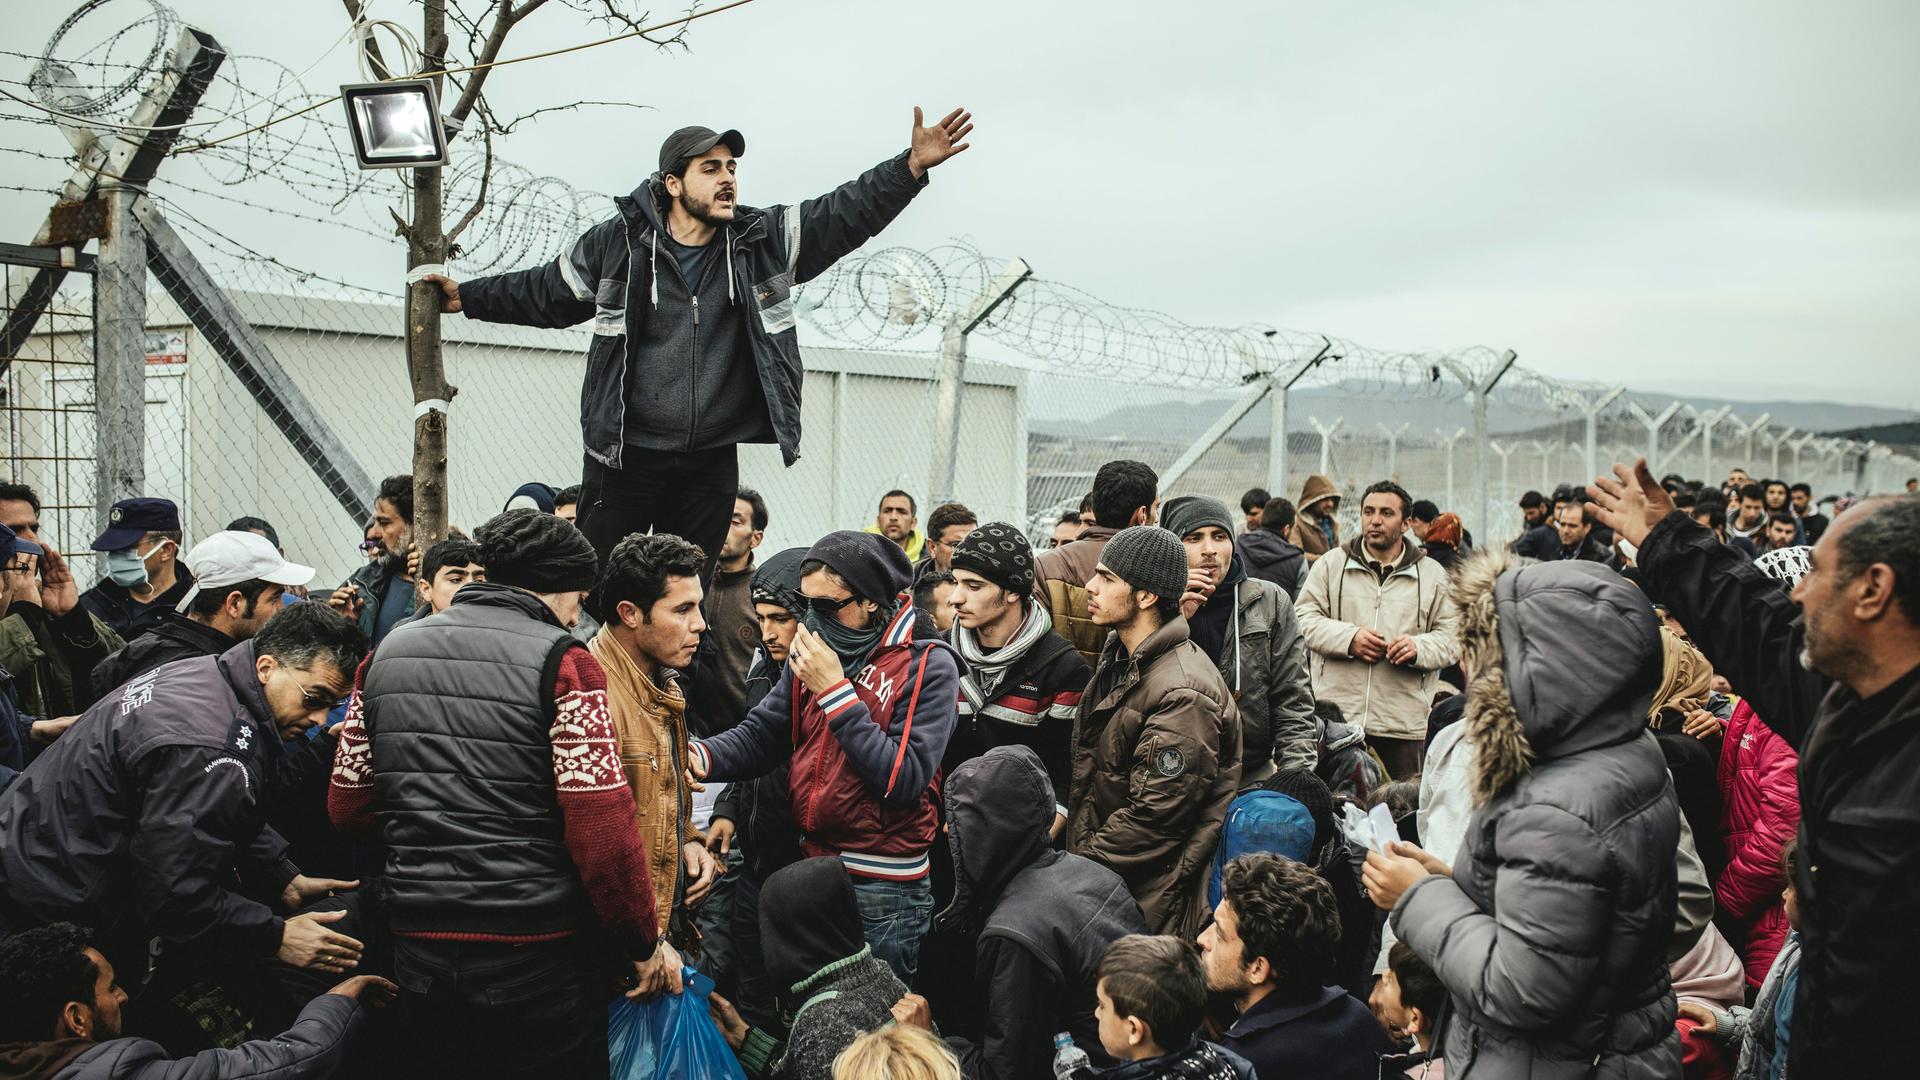 Flüchtlingslager Idomeni an der griechisch-mazedonischen Grenze, wartende Flüchtlinge am Checkpoint, ein Mann übersetzt die offiziellen Informationen.